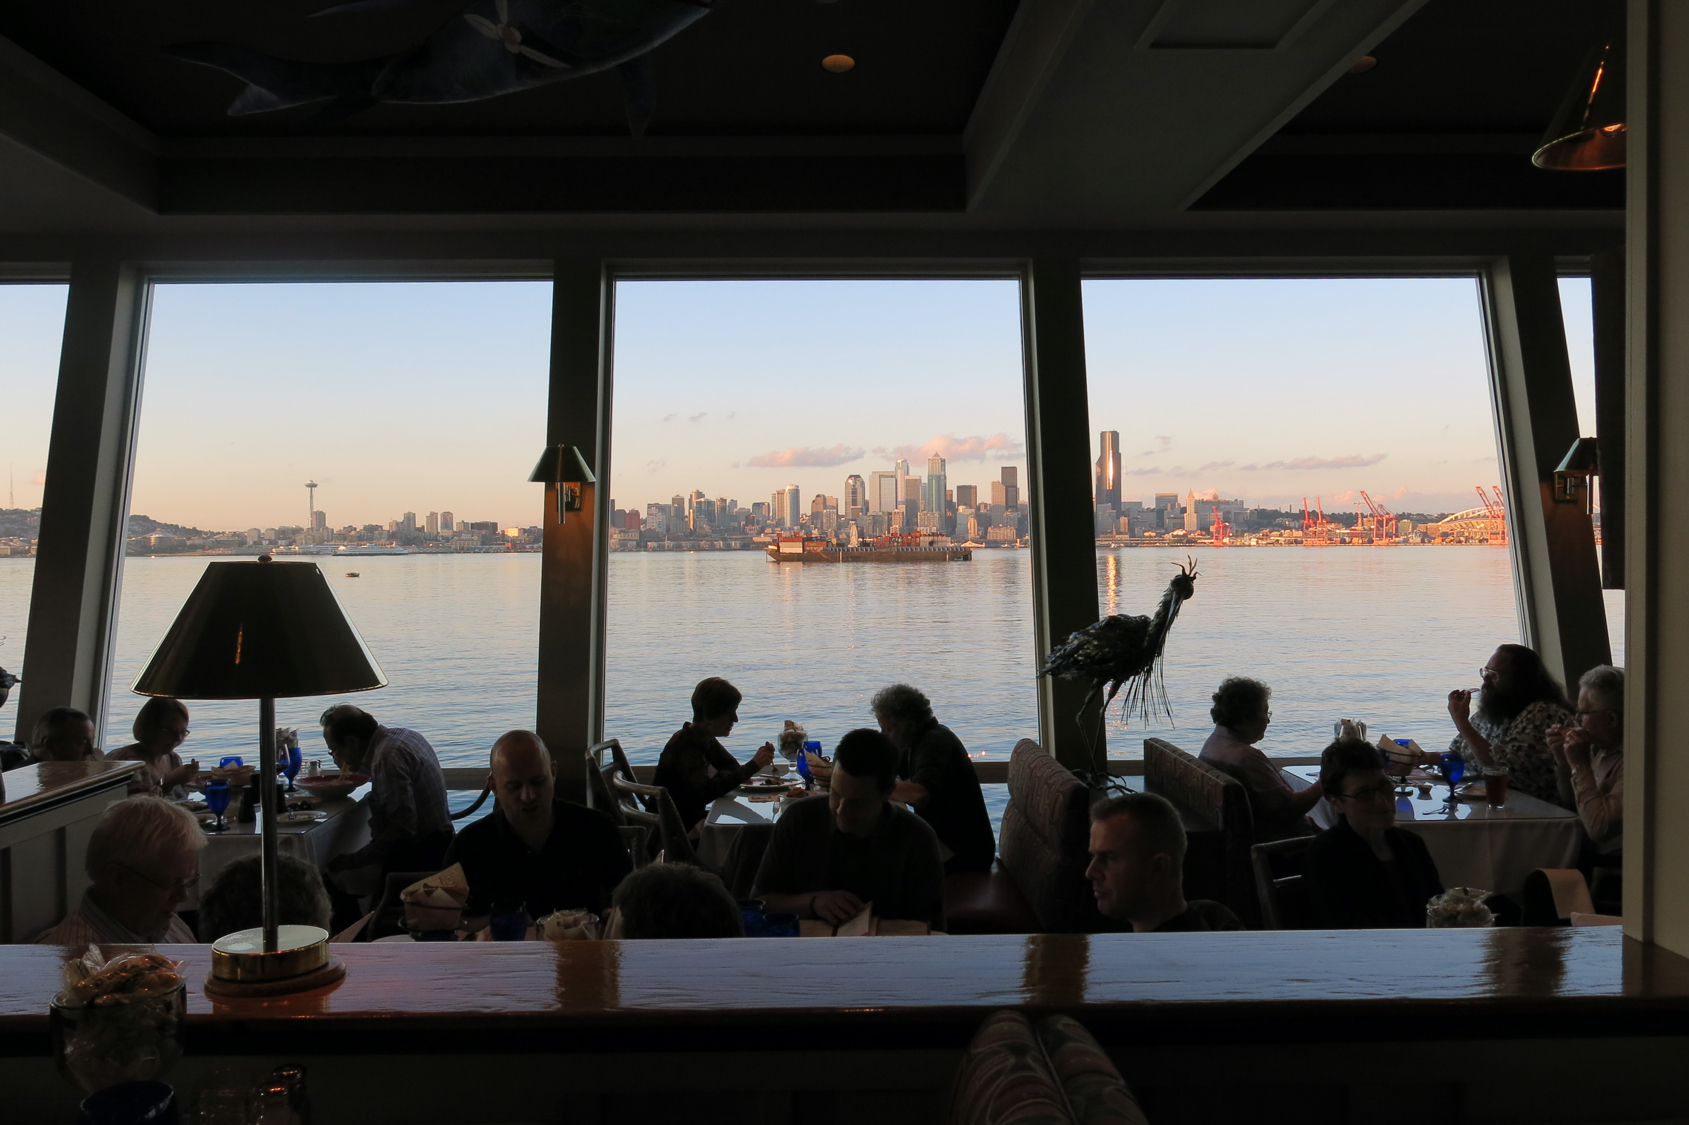 「ソルティーズ・オン・アルカイ」窓の外に広がる、シアトルダウンタウンの眺めを楽しみながらディナーを。